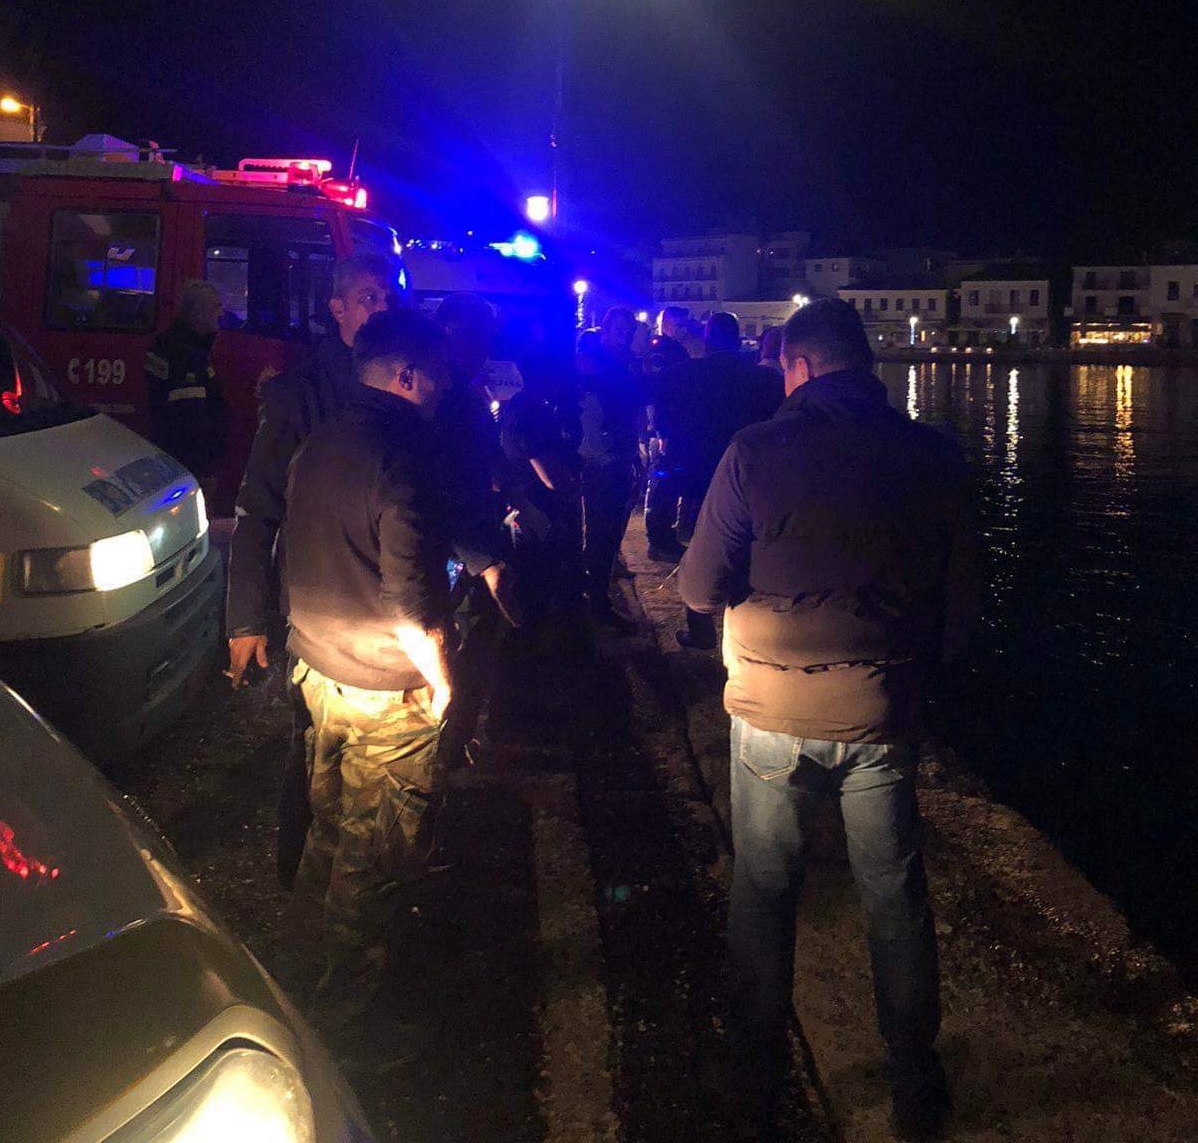 Μεσσηνία: Αυτοκίνητο με δύο επιβαίνοντες έπεσε στο λιμάνι της Πύλου – Ανασύρθηκε ένα άτομο χωρίς τις αισθήσεις του